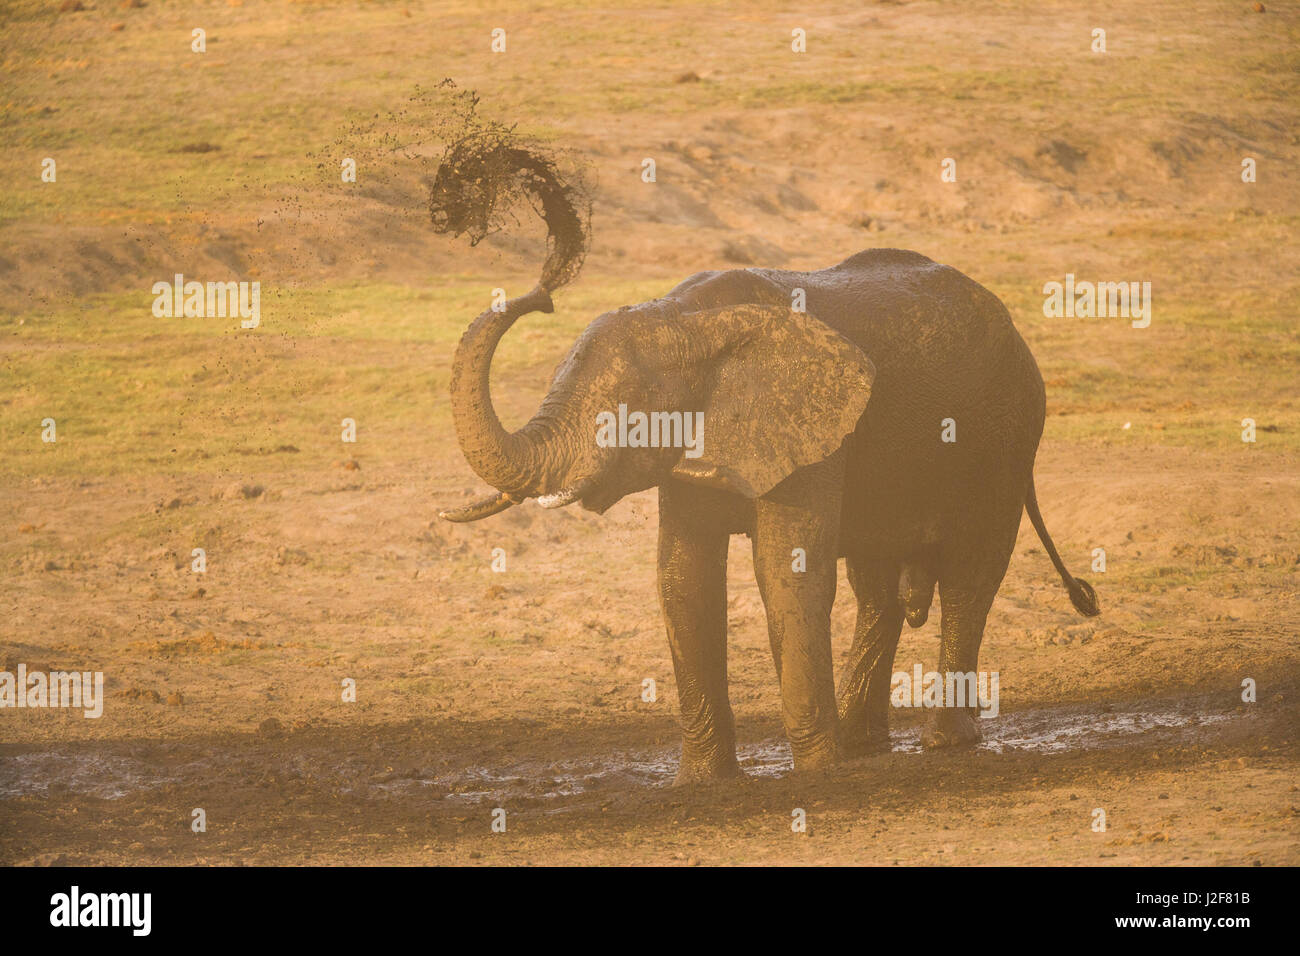 Elephant bull prend un bain de boue et de poussière Banque D'Images